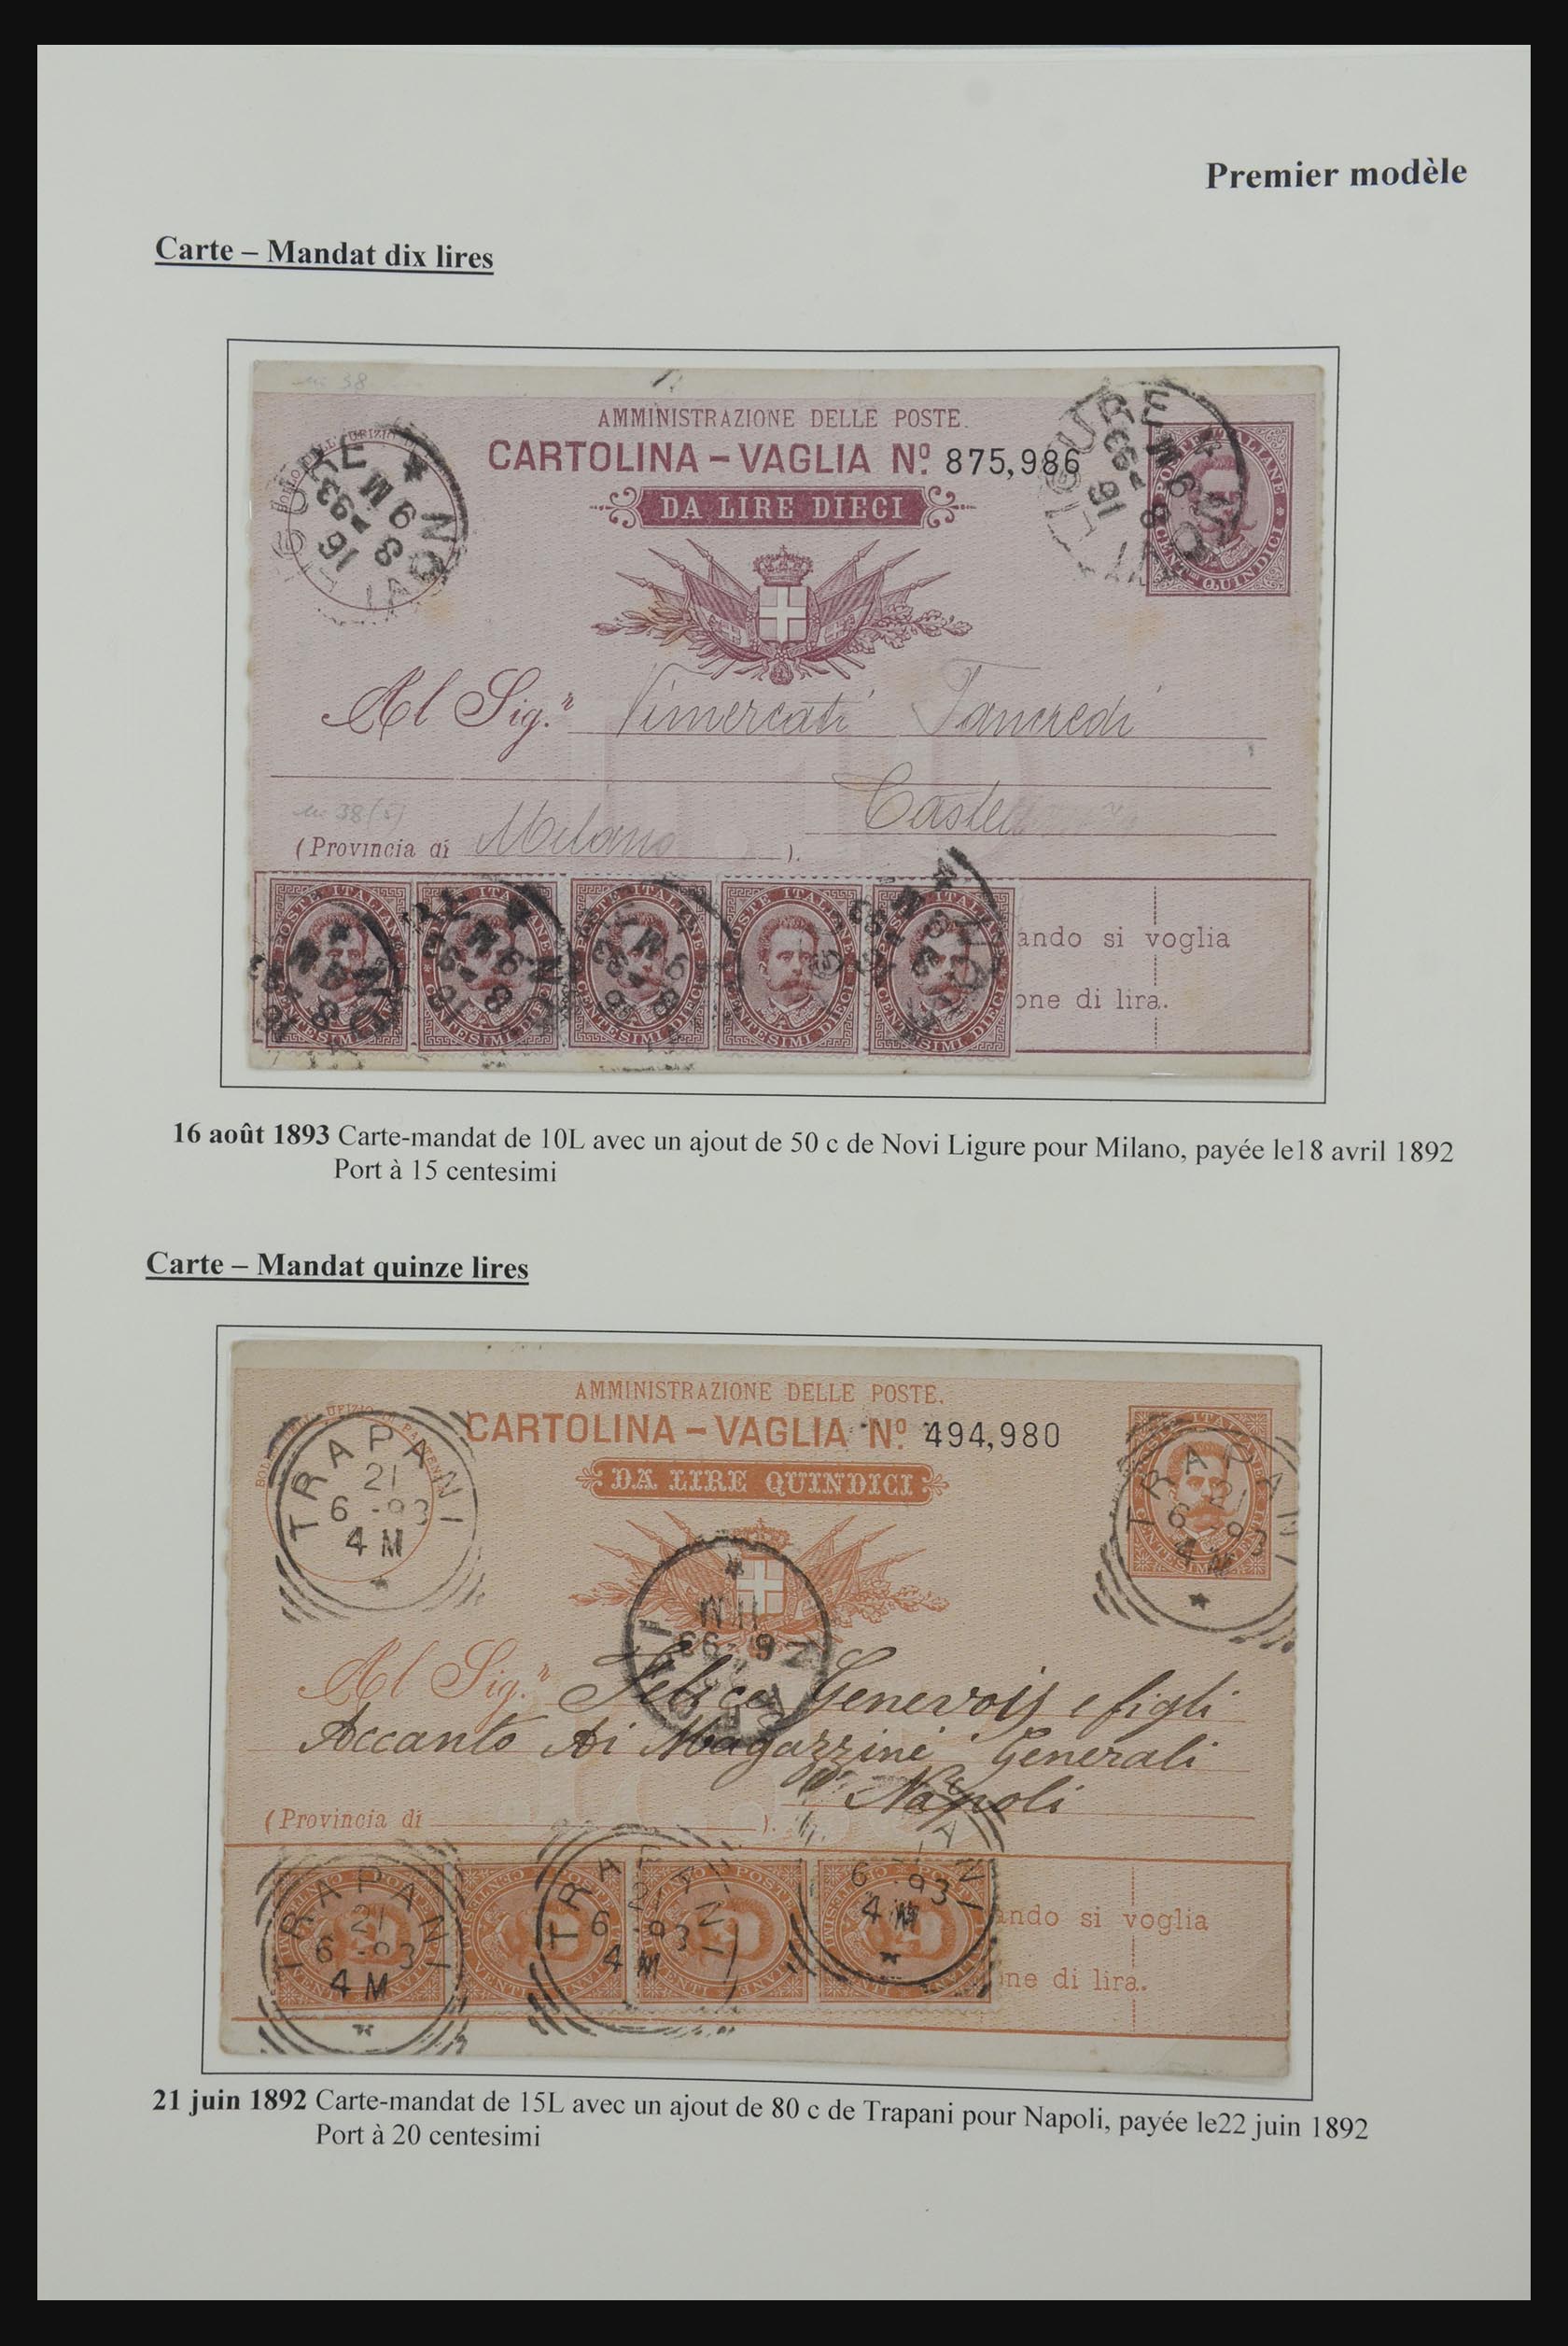 32243 006 - 32243 Italië postbewijskaarten 1892-1902.